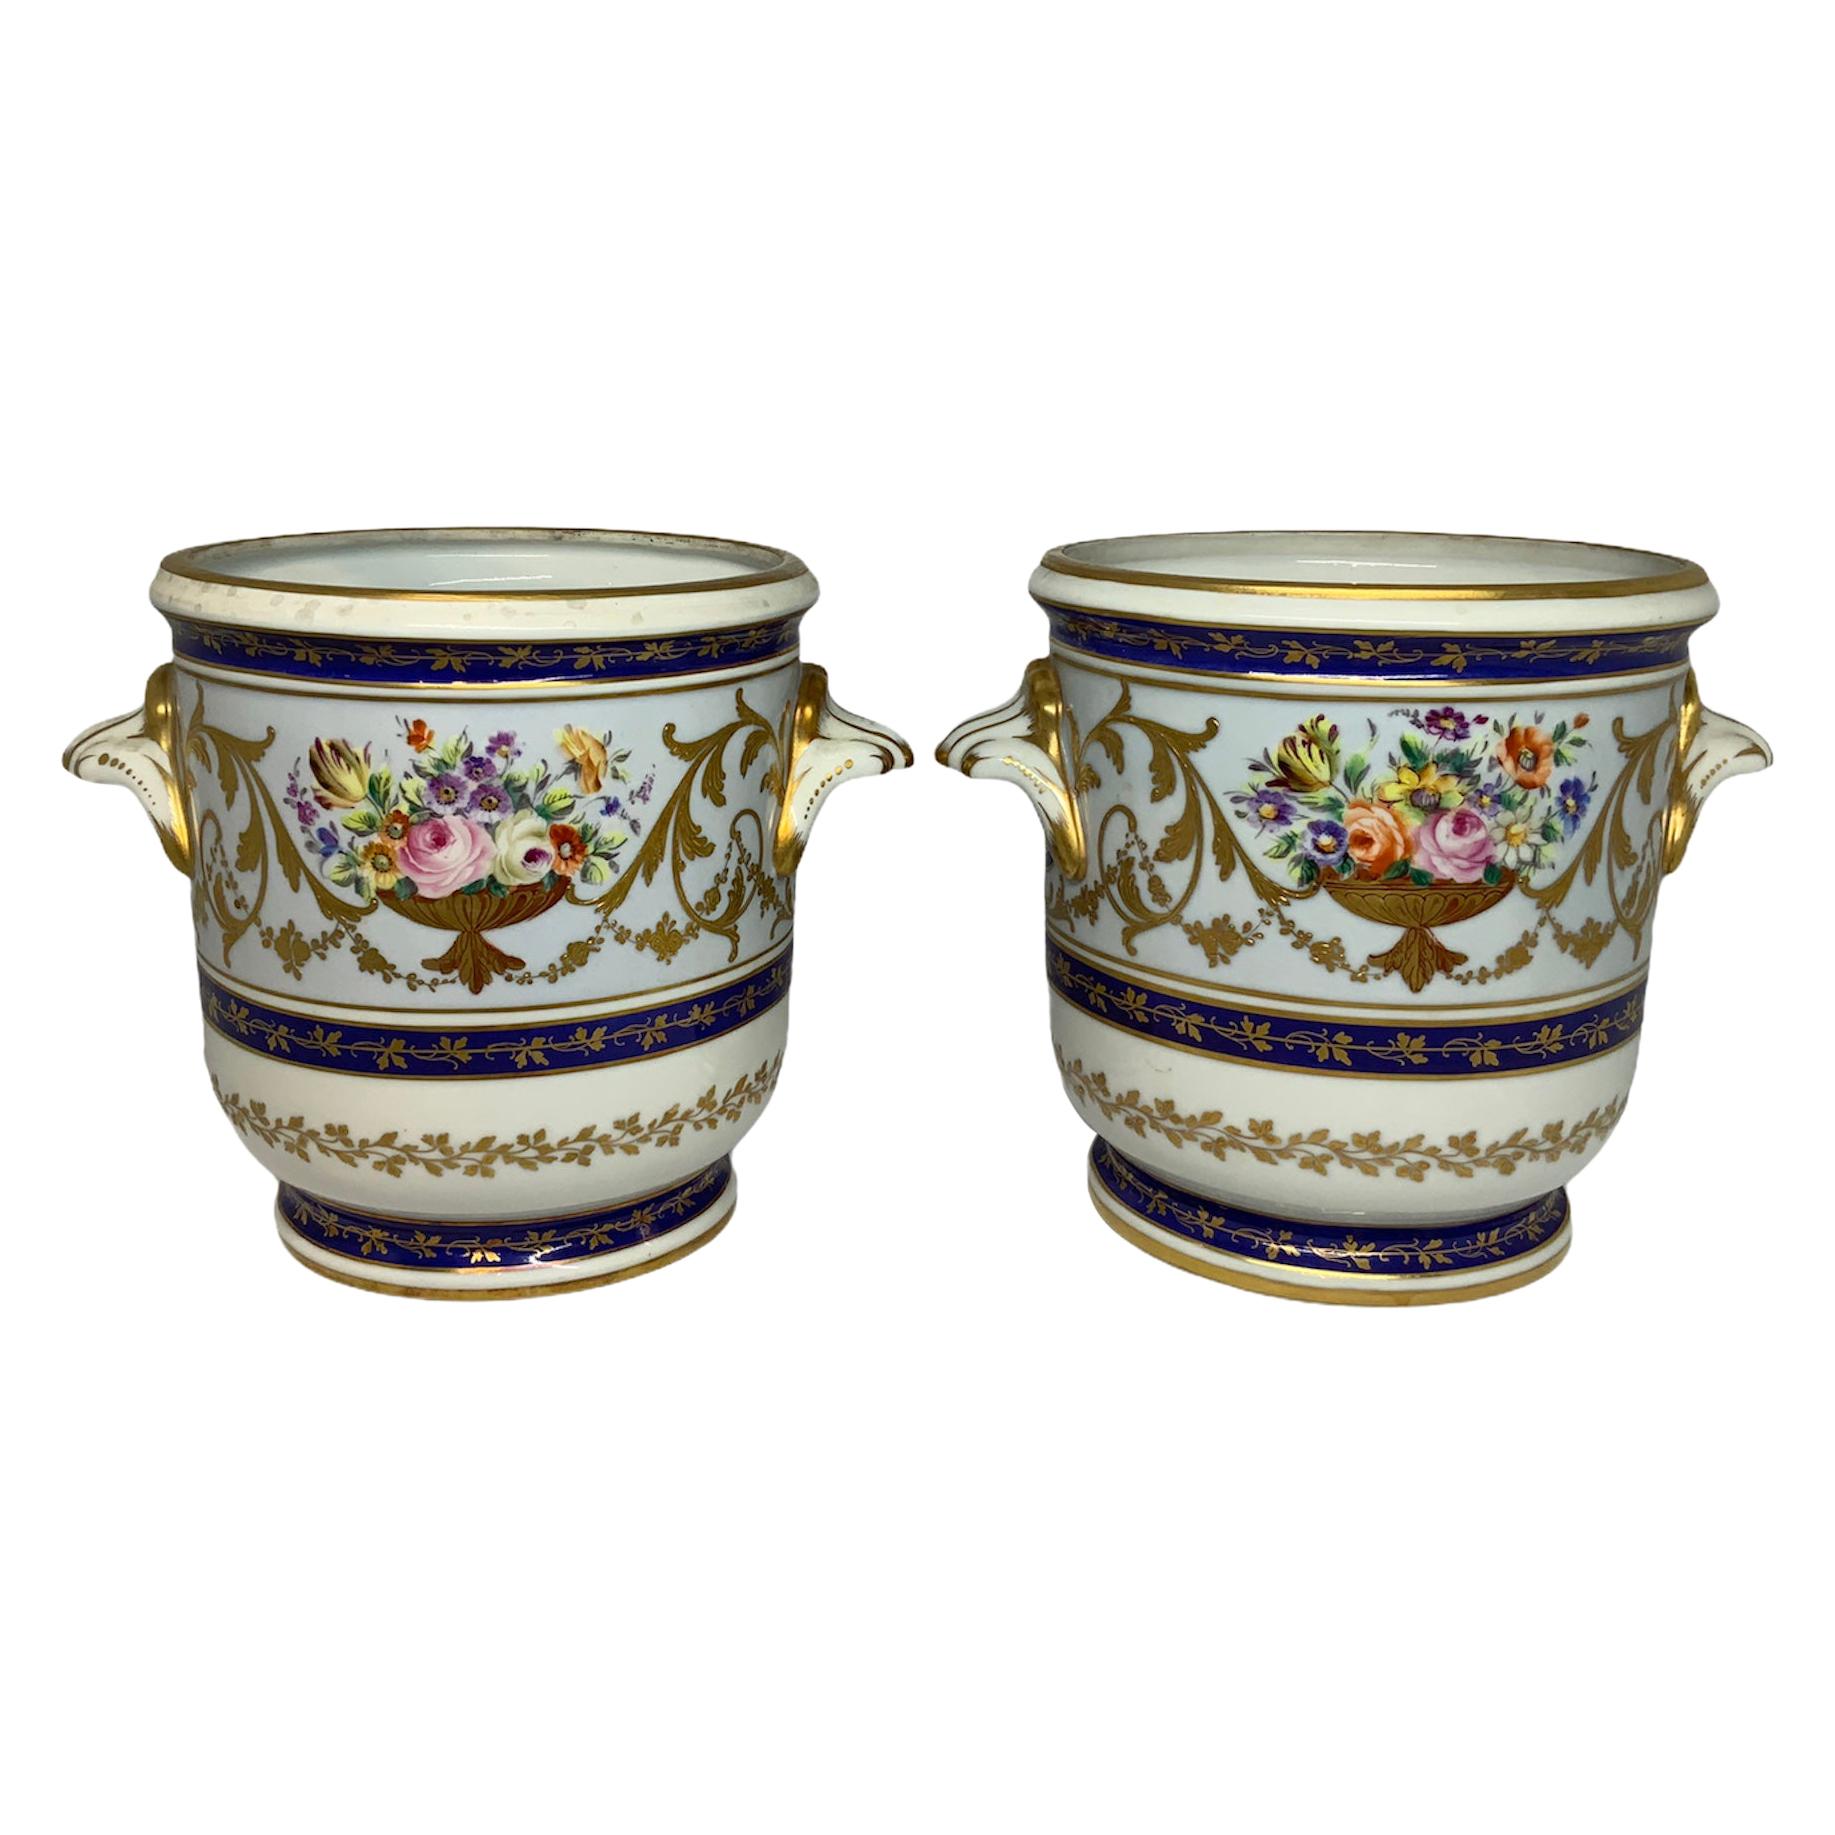 Camille Le Tallec Porcelain Pair of Cachepot